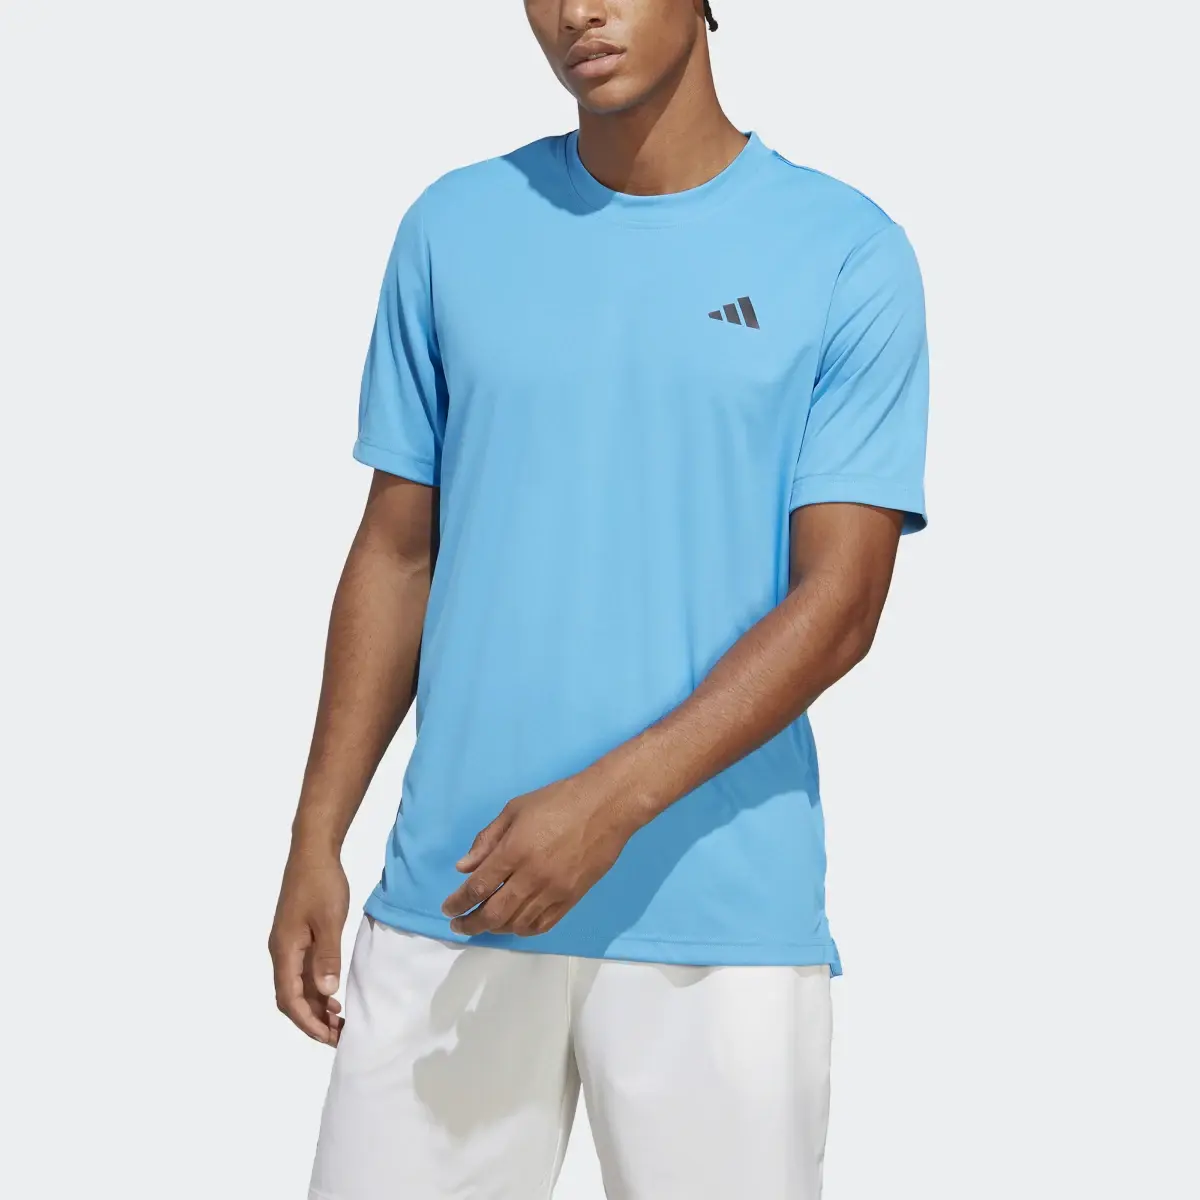 Adidas Club Tennis T-Shirt. 1